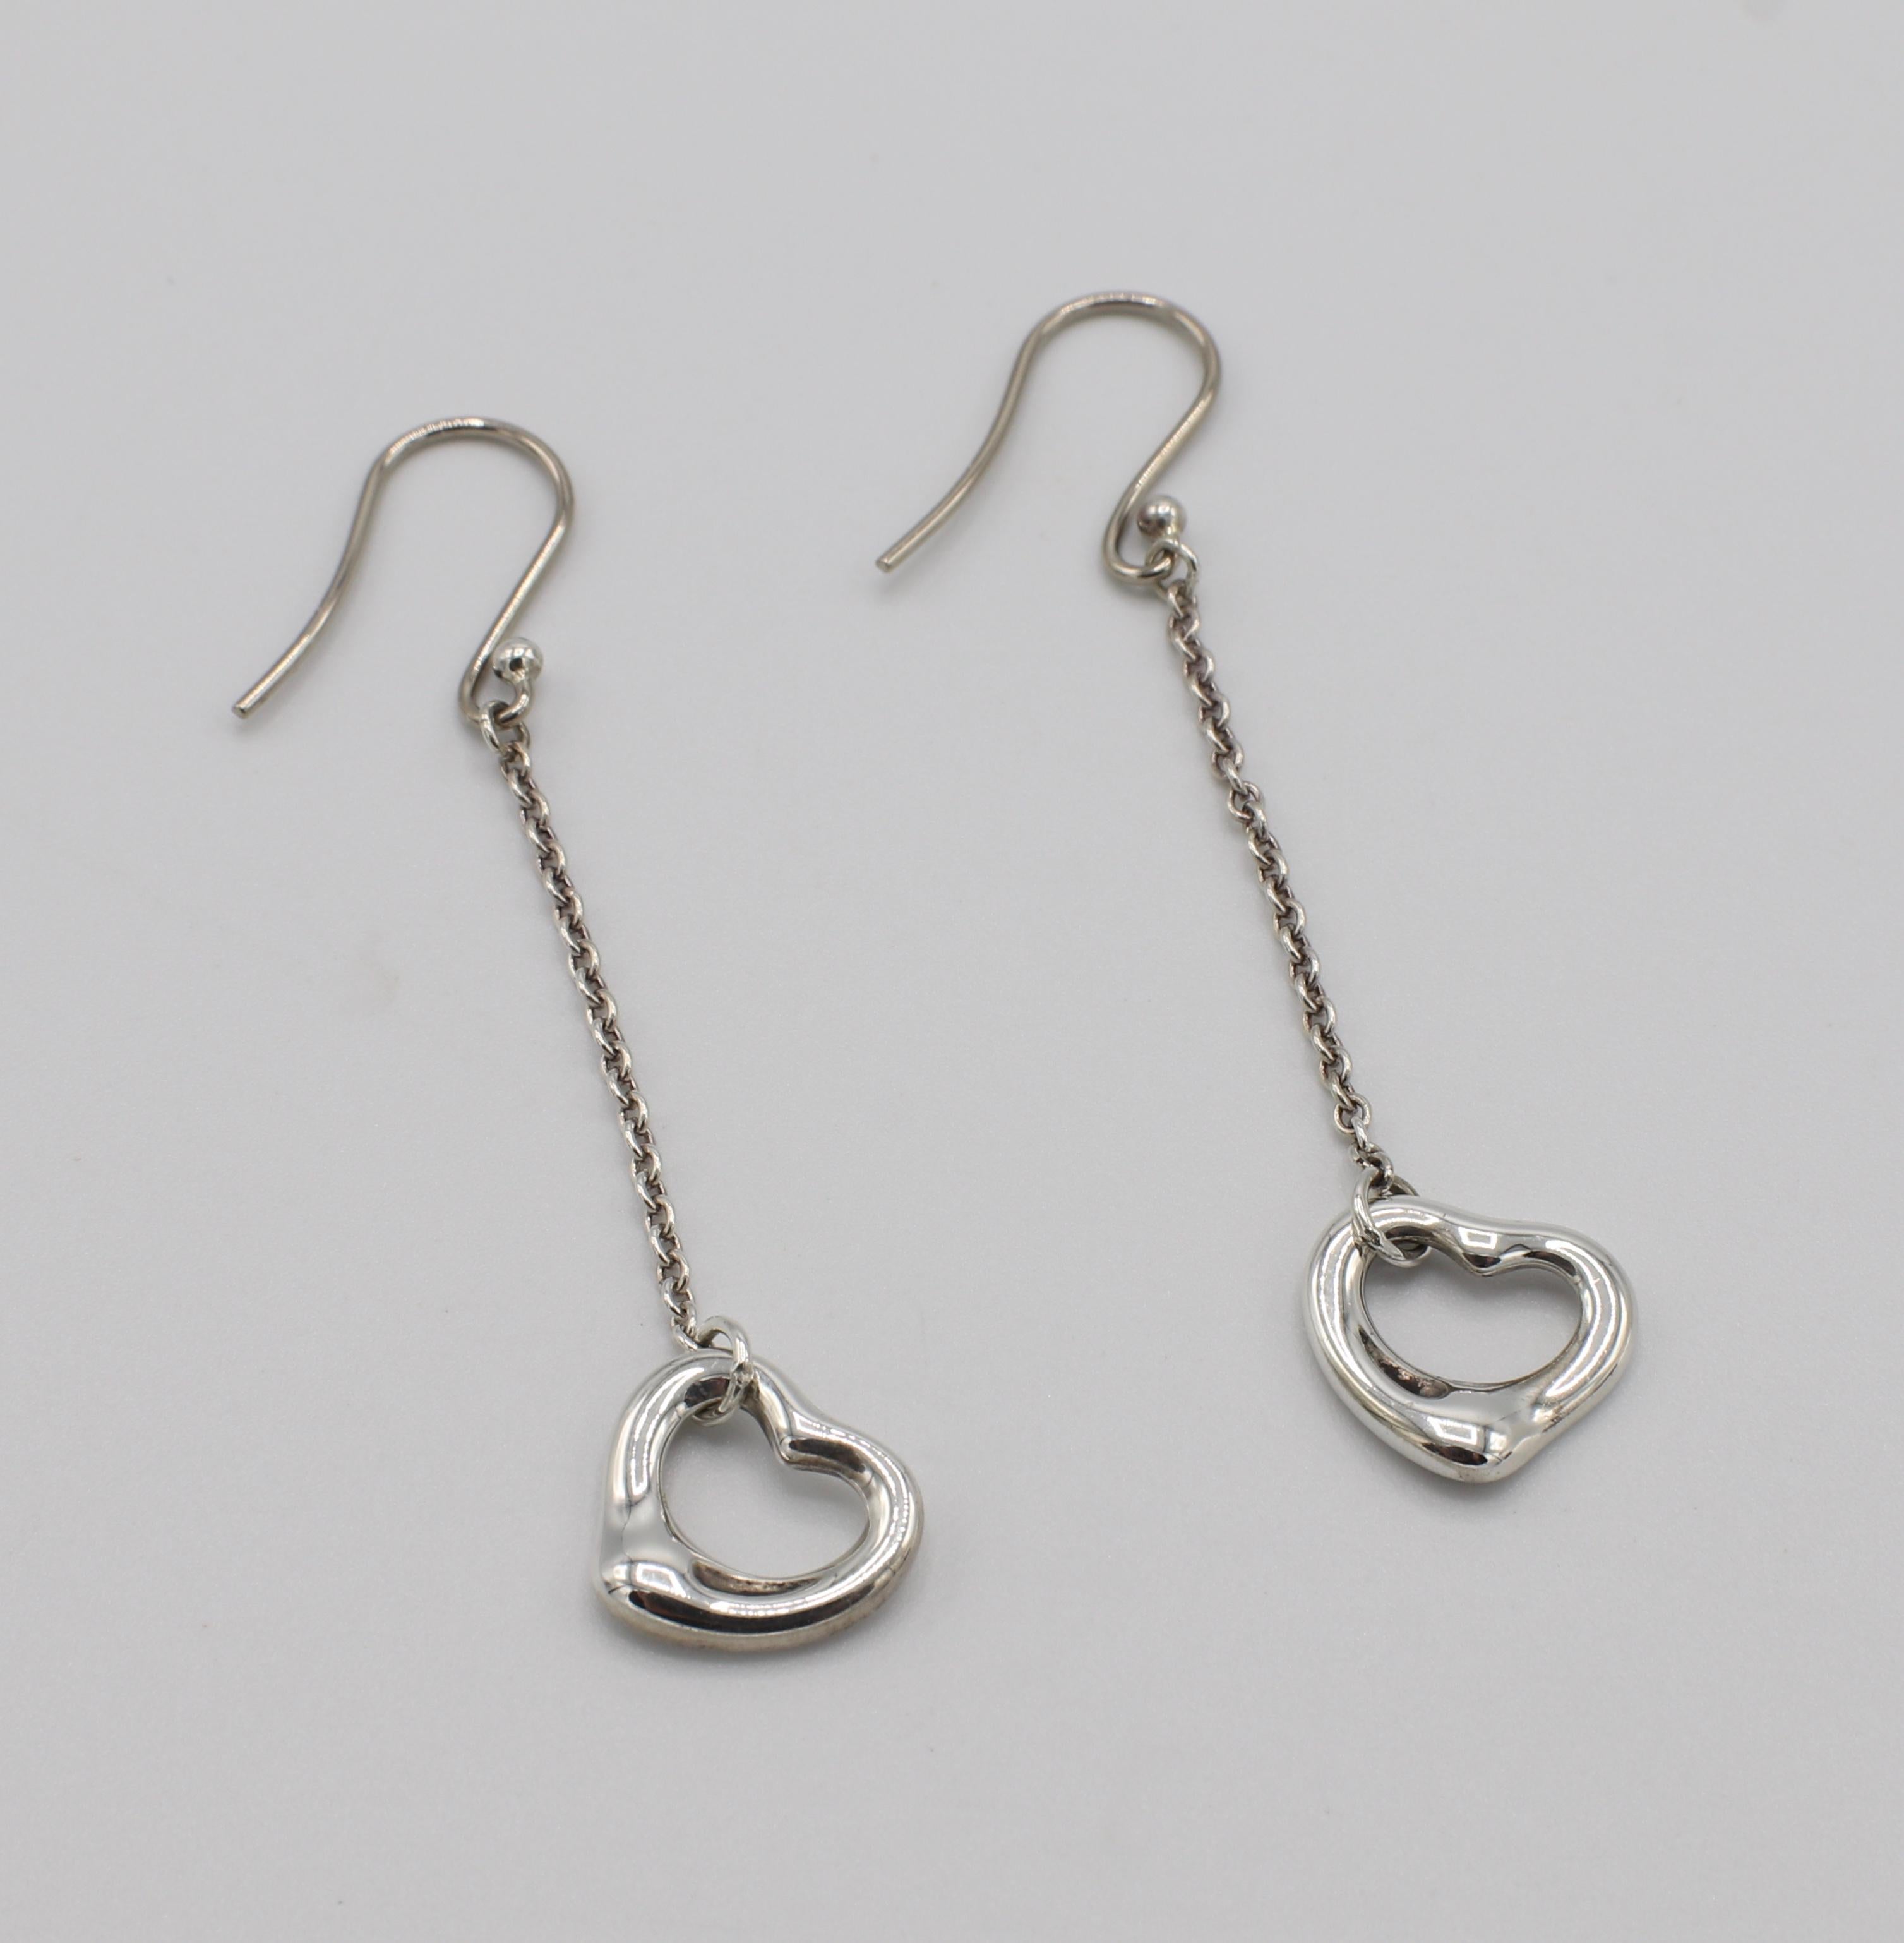 tiffany dangle heart earrings